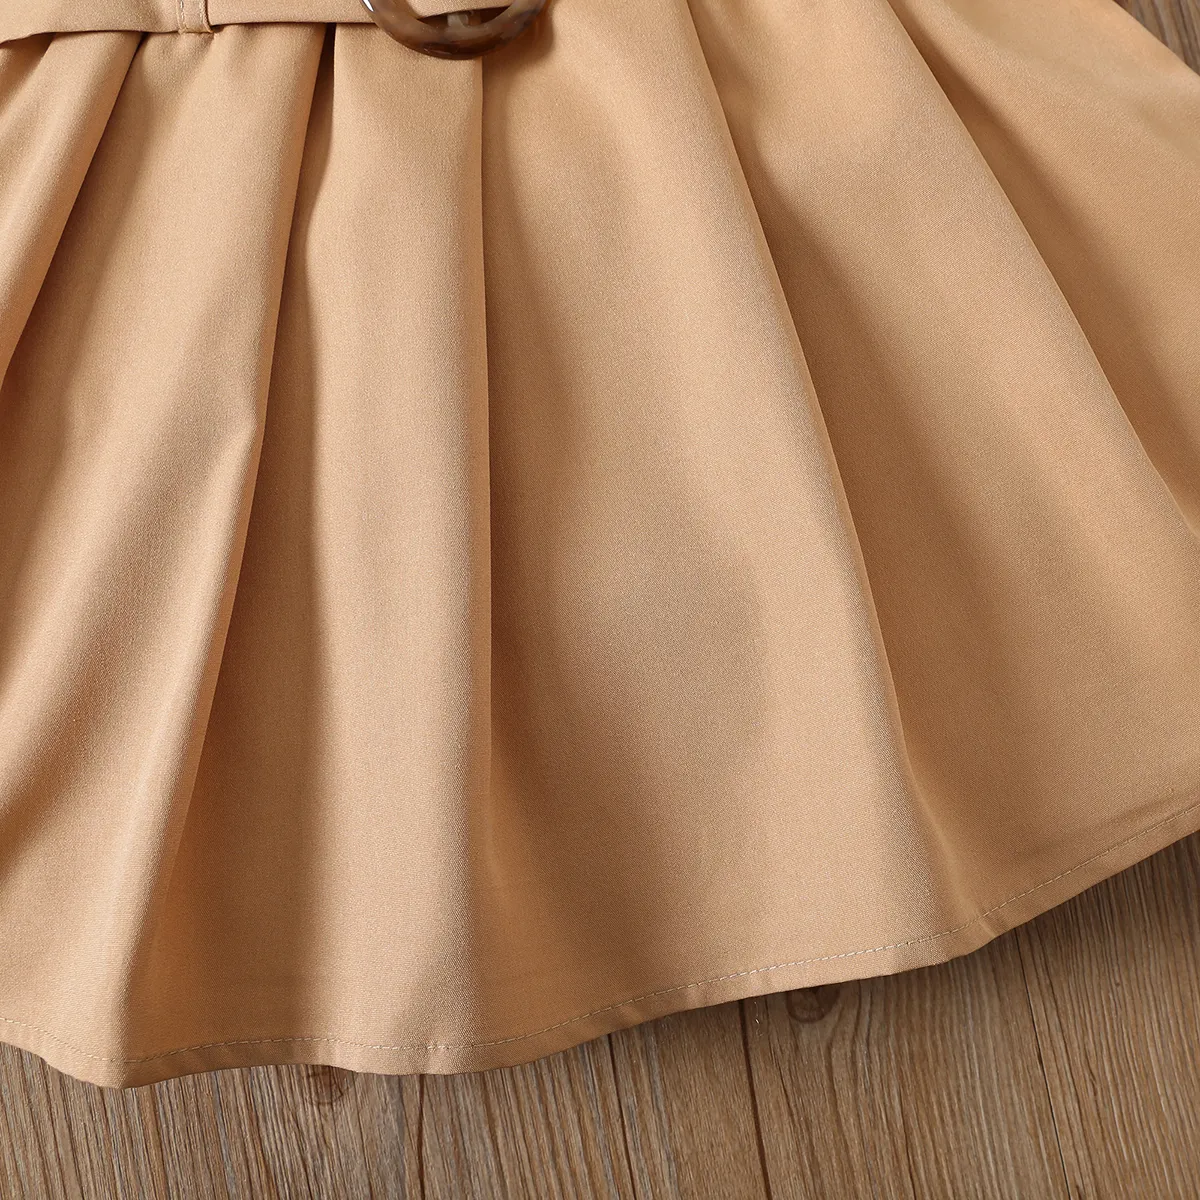 Girls' 2pcs Brown Halter Short Skirt Set - Avant-garde Style Khaki big image 1